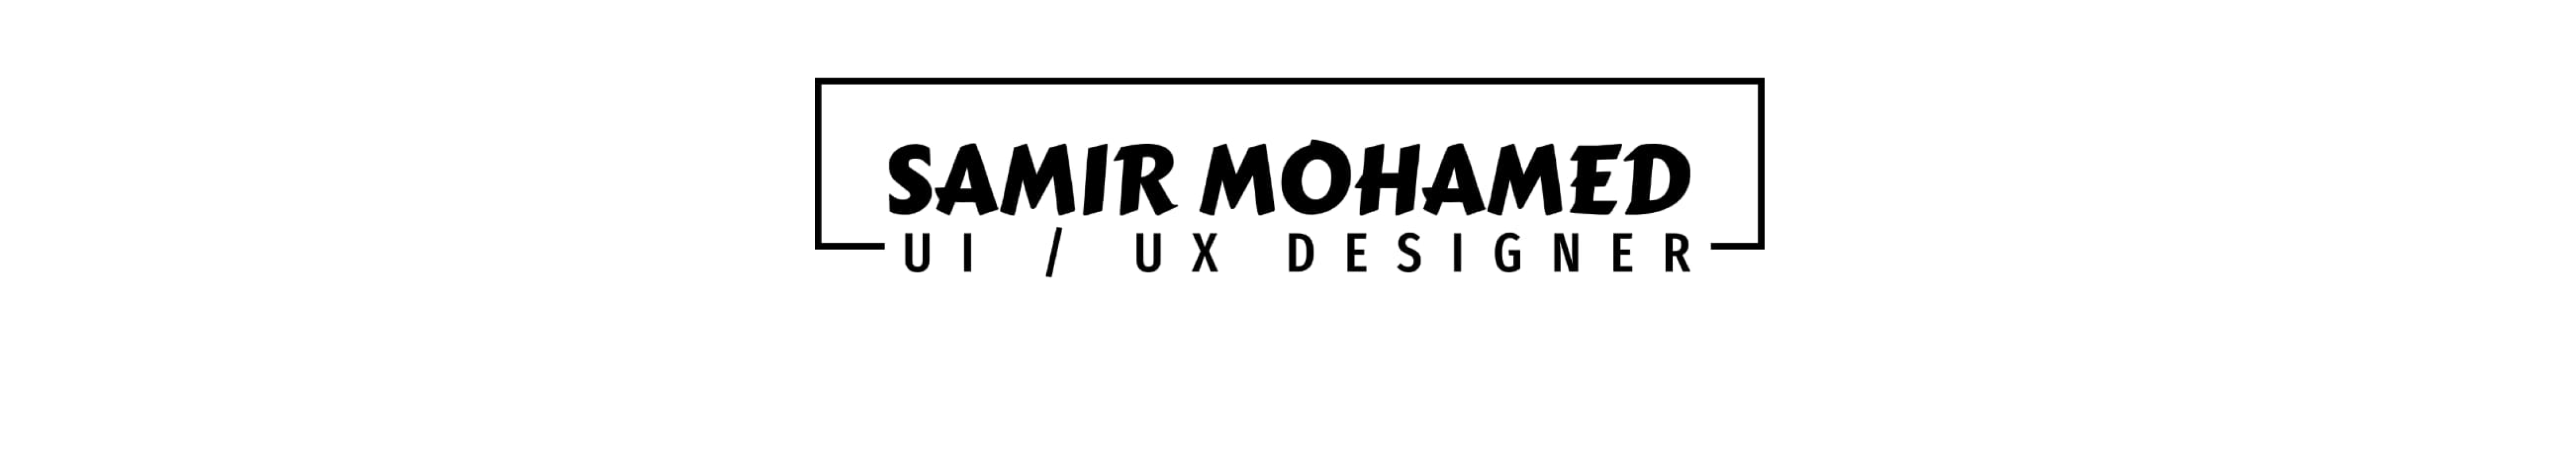 Samir Mohamed's profile banner